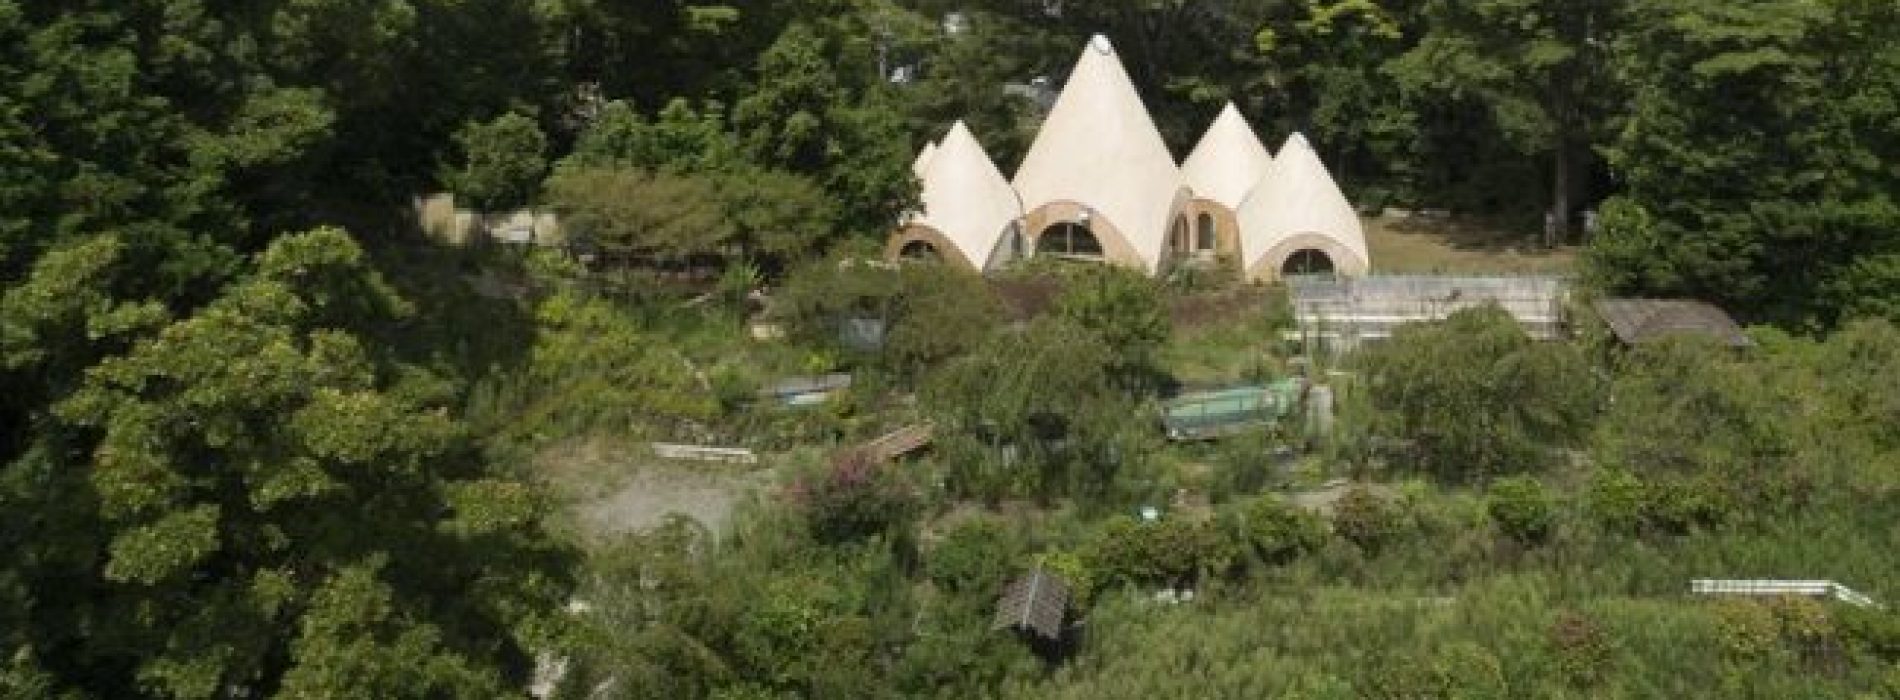 Dit Japanse boshuis is als iets uit een sprookje